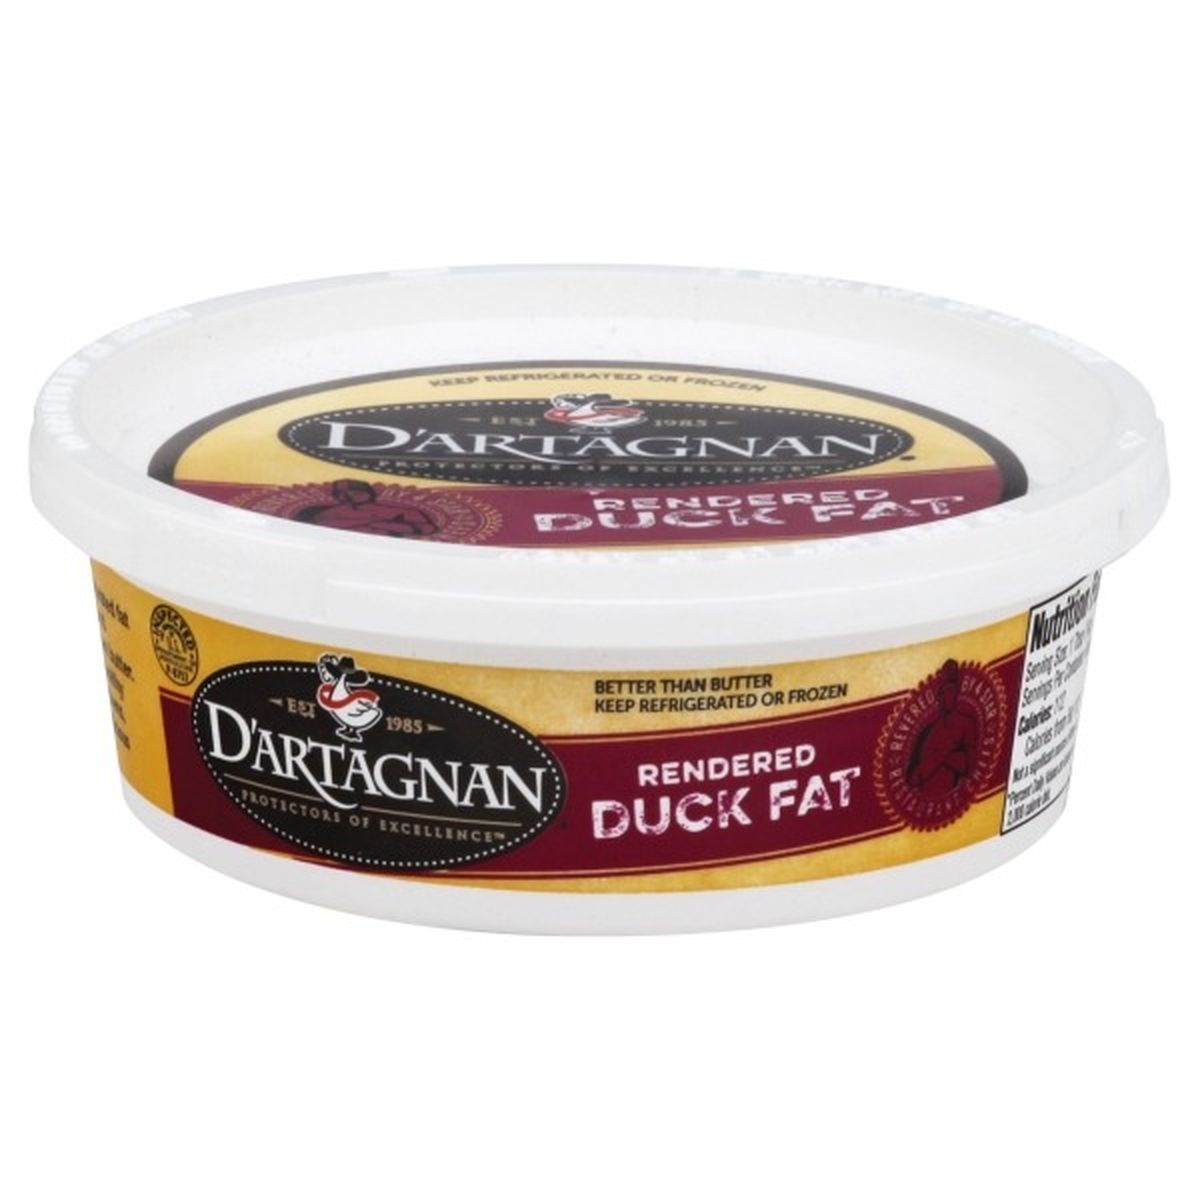 Calories in D'Artagnan Duck Fat, Rendered